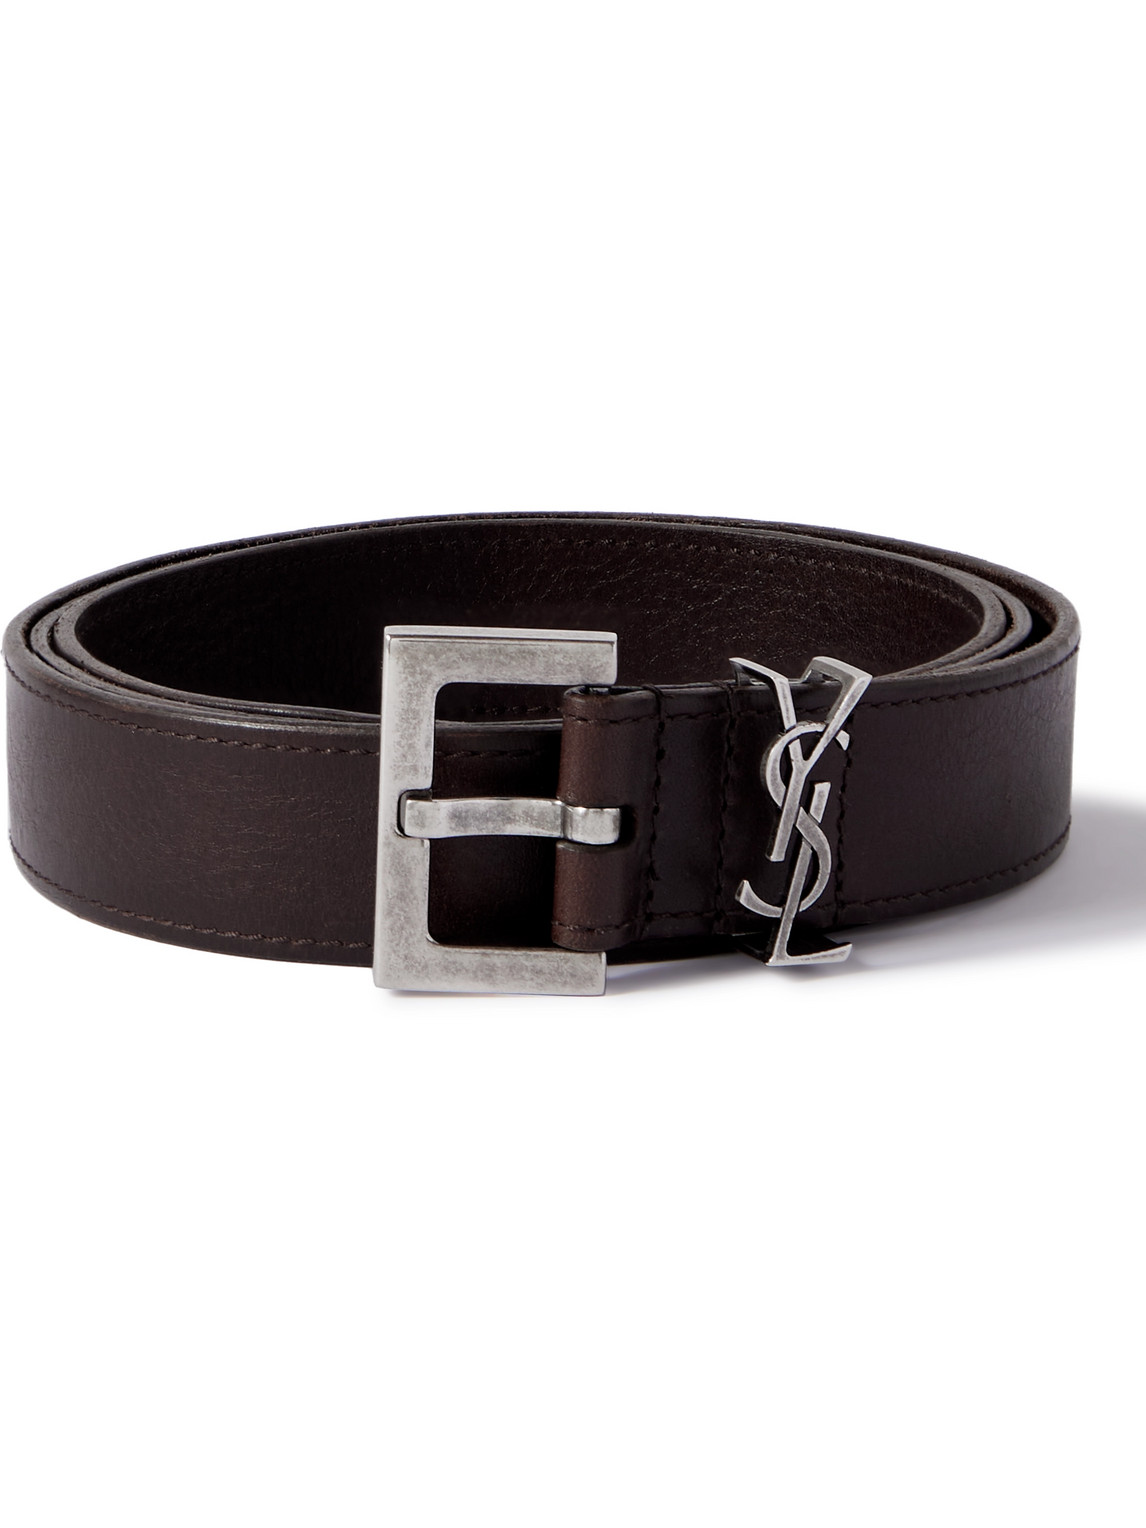 SAINT LAURENT - 3cm Leather Belt - Men - Brown - EU 85 von SAINT LAURENT